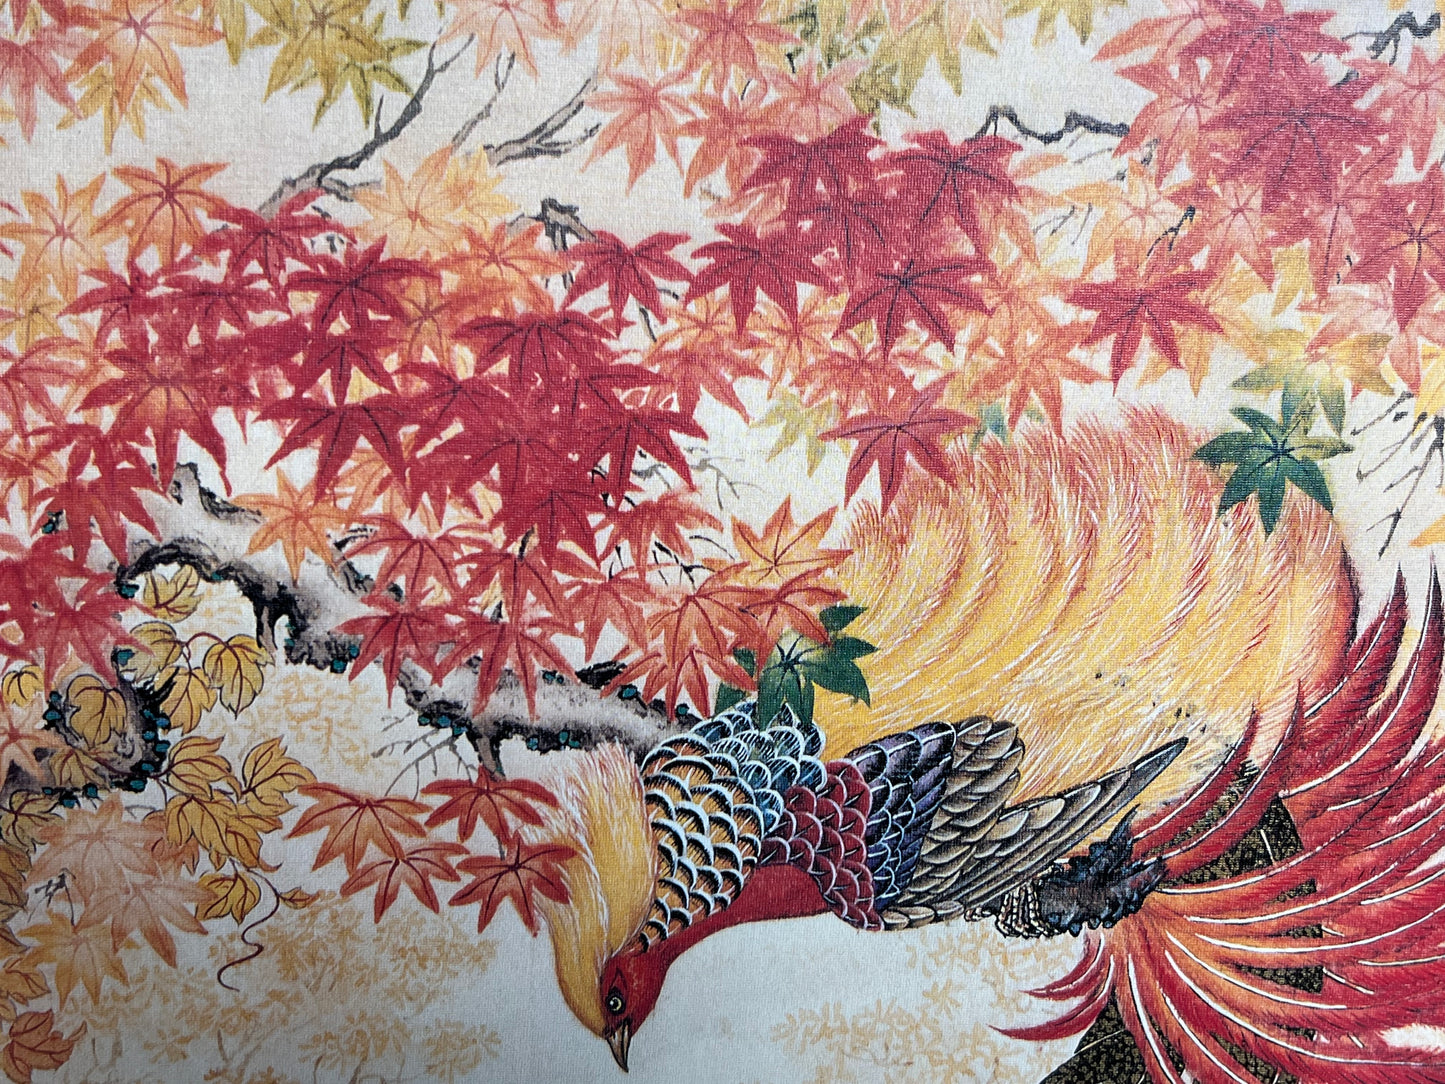 Wei Tseng Yang Framed Print "The Dance of Autumn" 17"x30"